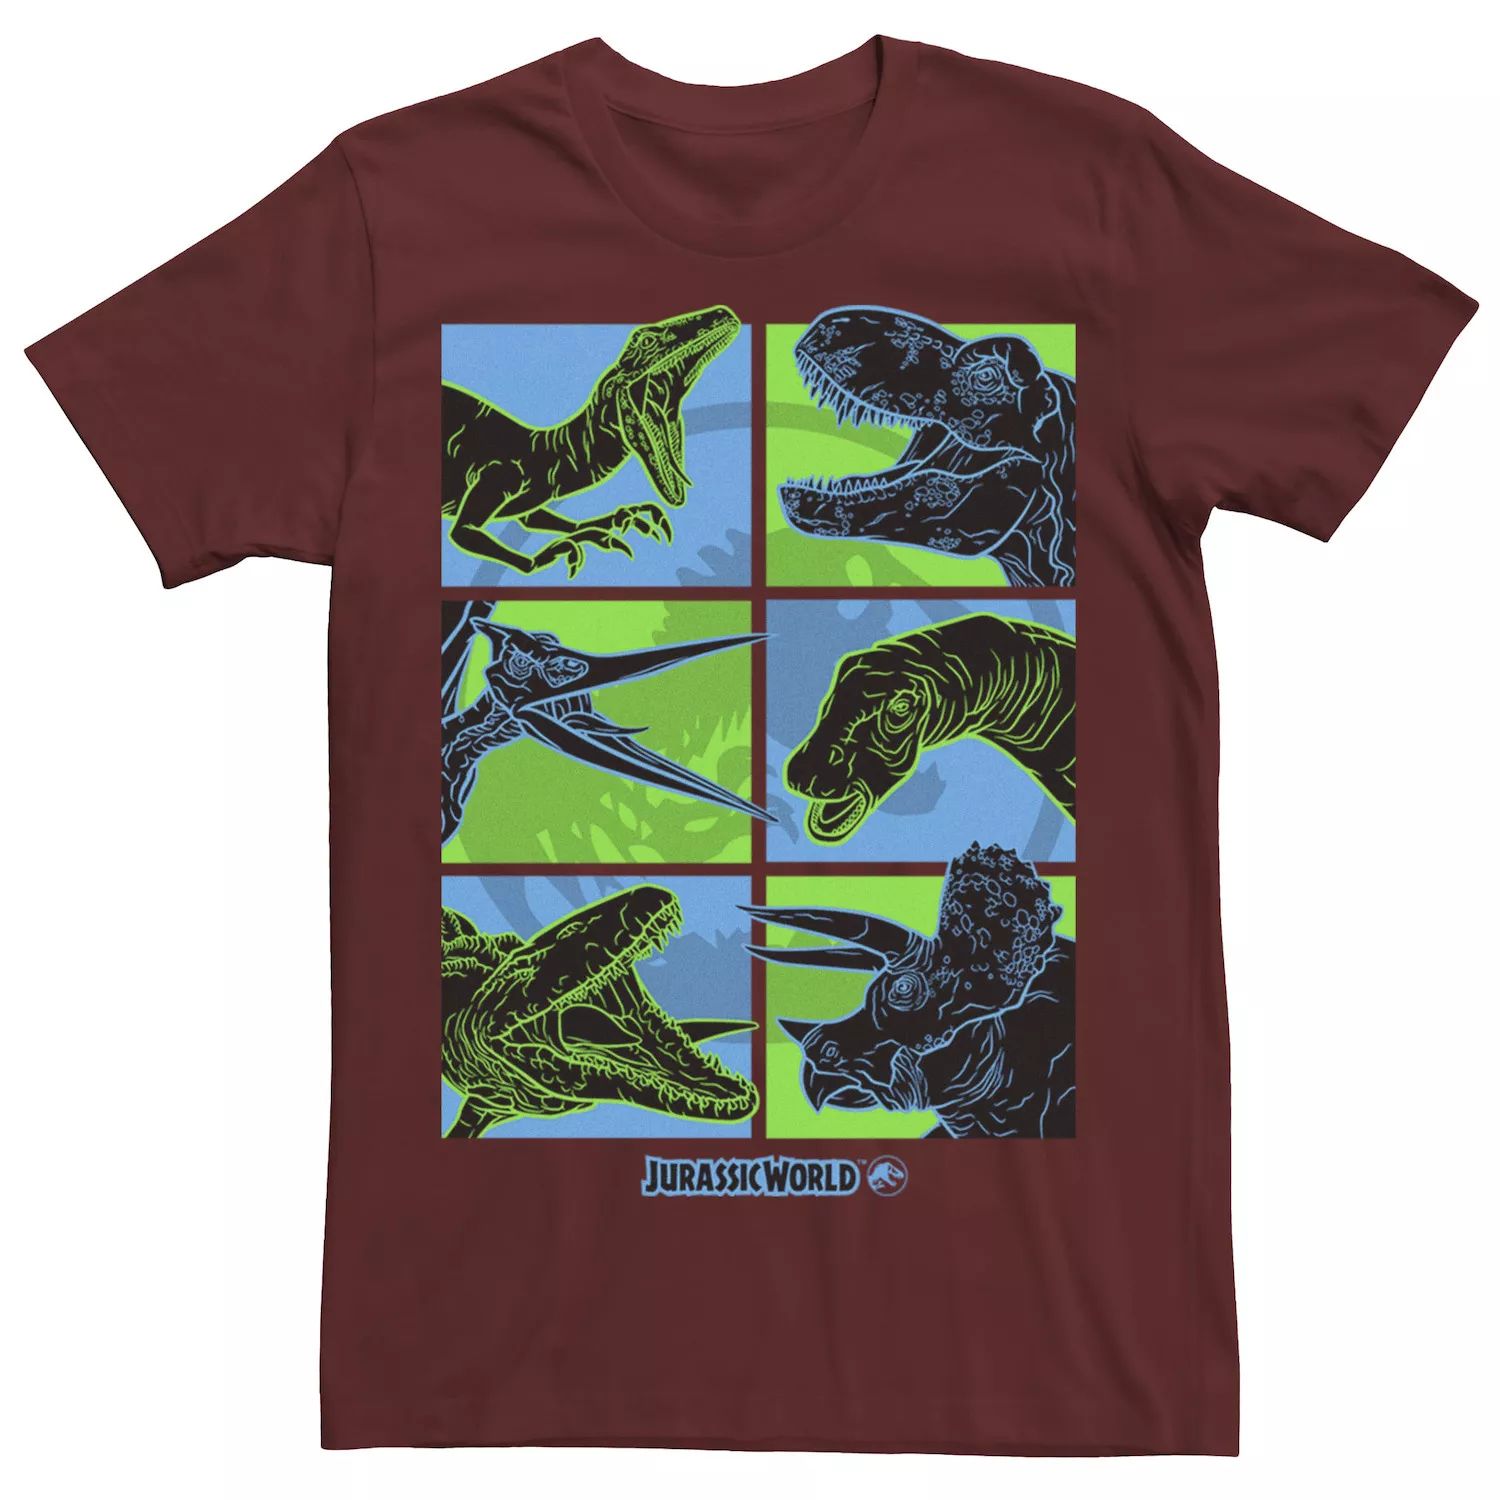 

Мужская футболка Jurassic World Two Dino Faces в стиле комиксов в стиле поп Licensed Character